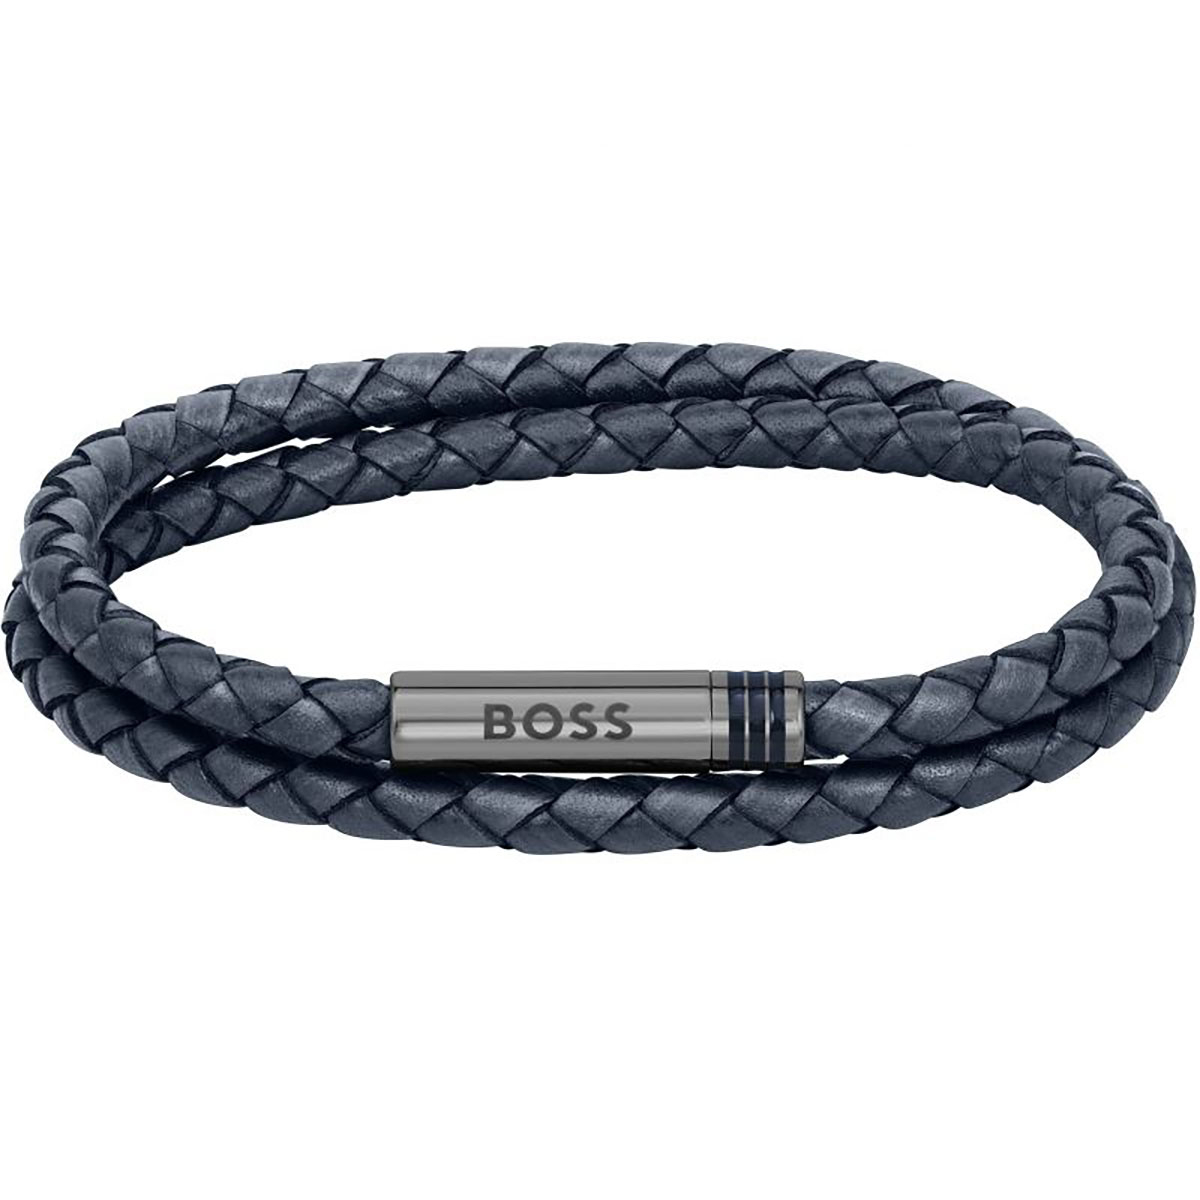 Boss Armband für Herren - 1580505M online kaufen